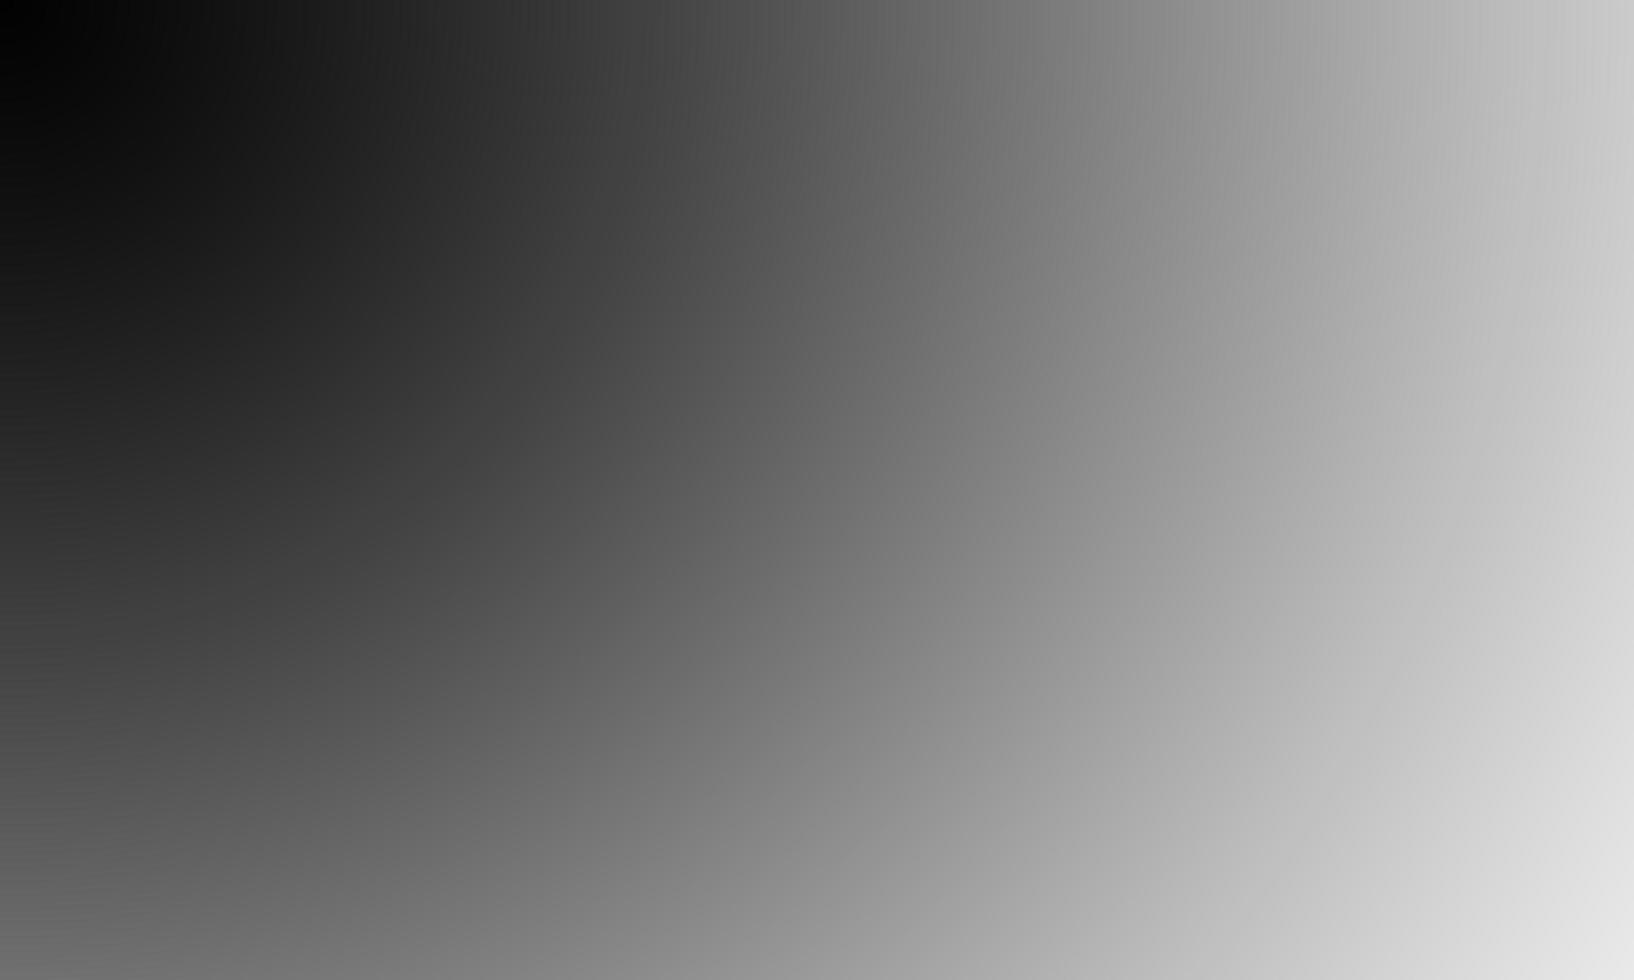 Hintergrund Farbverlauf schwarzes Overlay abstrakter Hintergrund schwarz, nacht, dunkel, abends, mit Platz für Text, für einen Hintergrund. foto